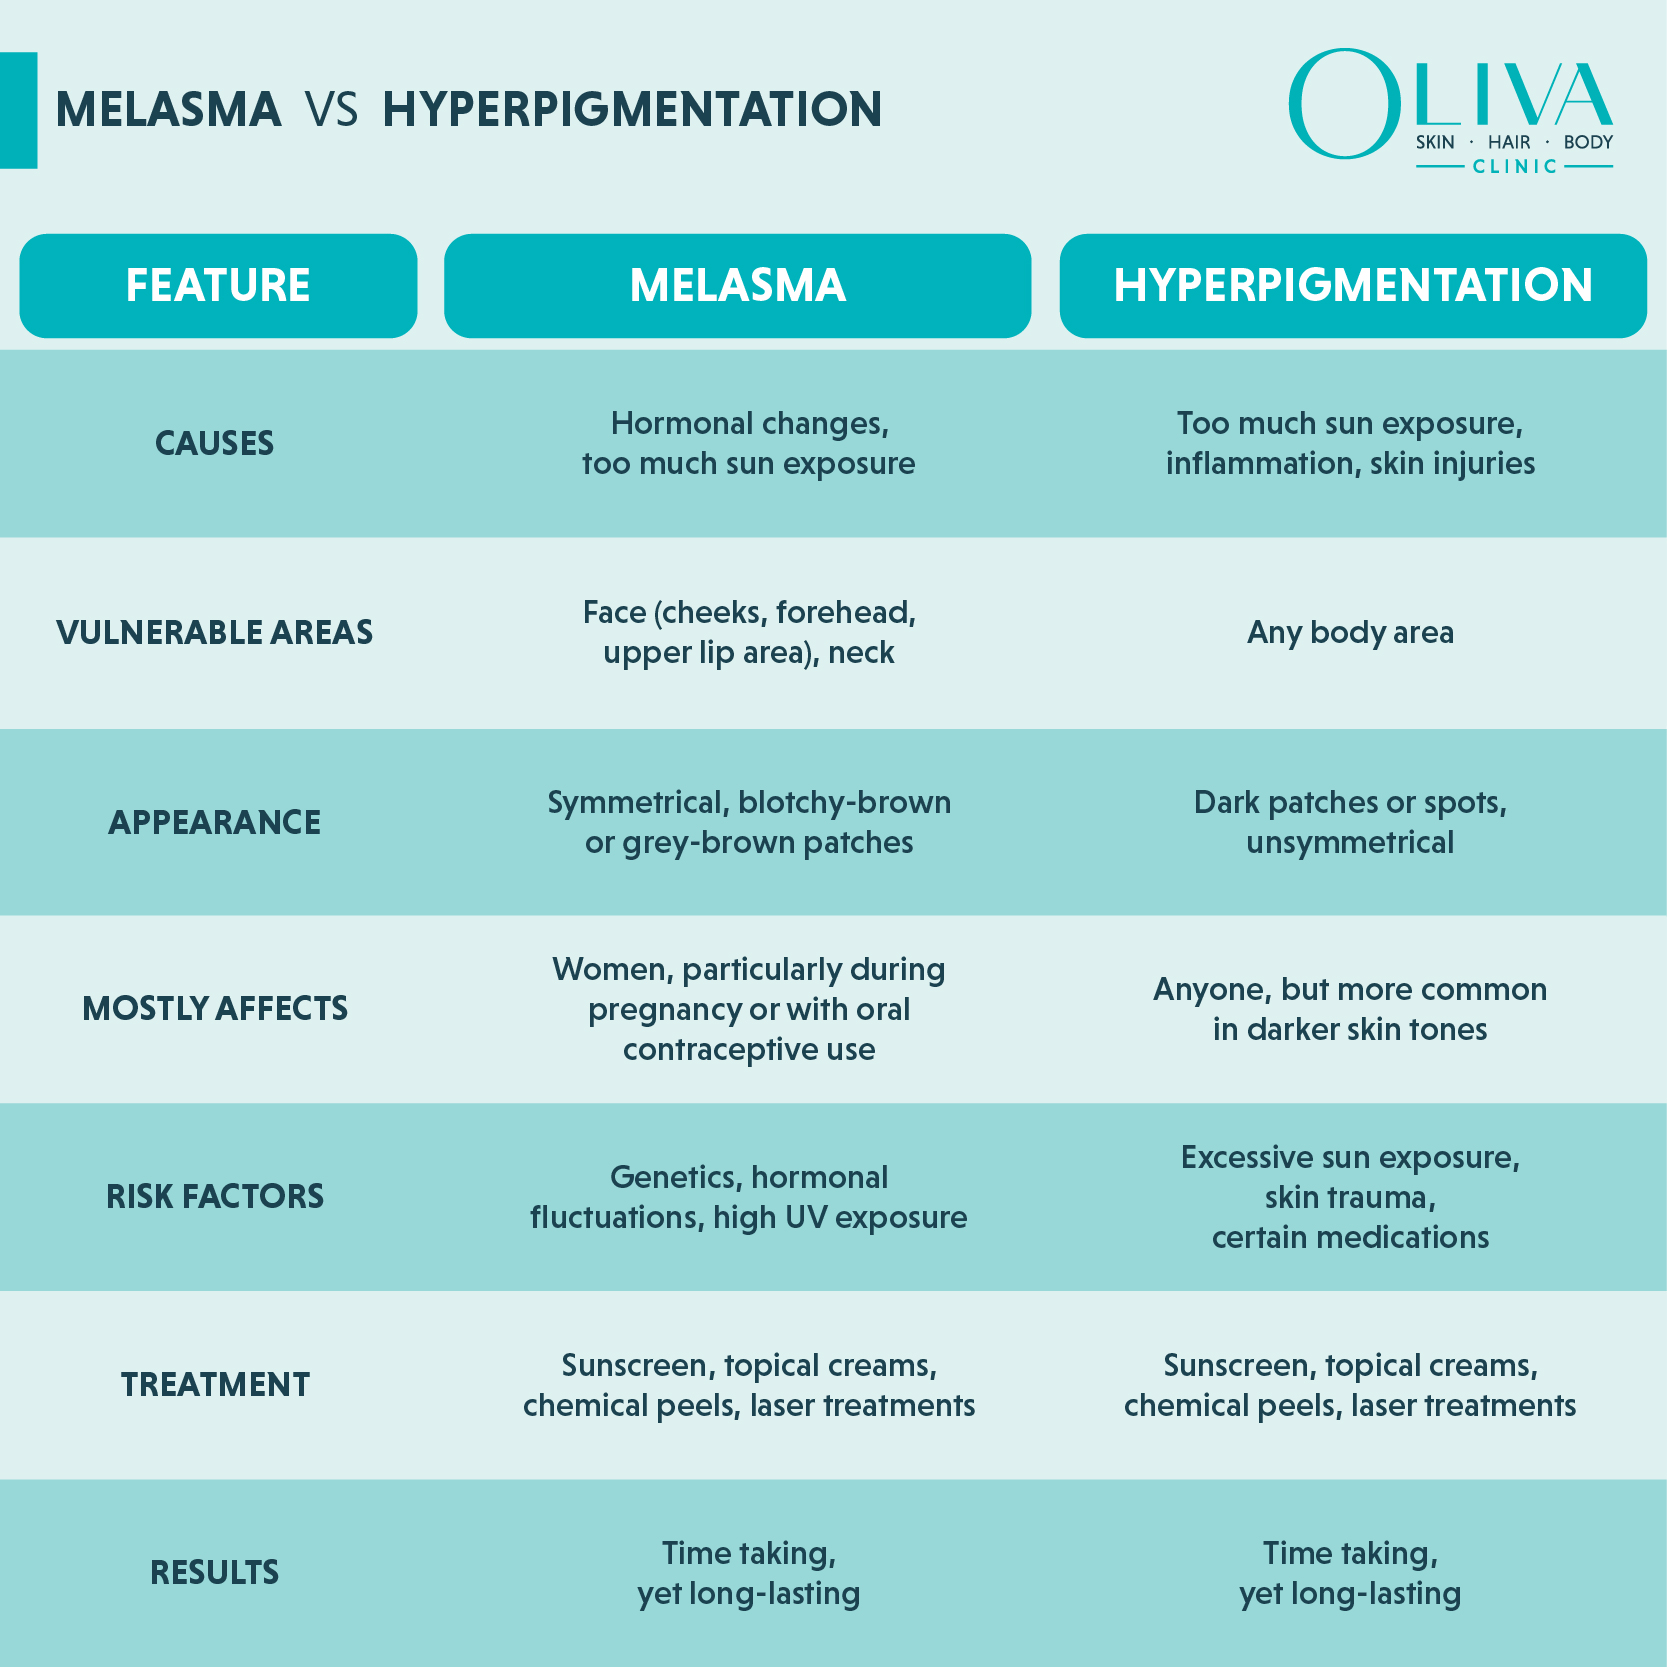 Melasma vs Hyperpigmentation